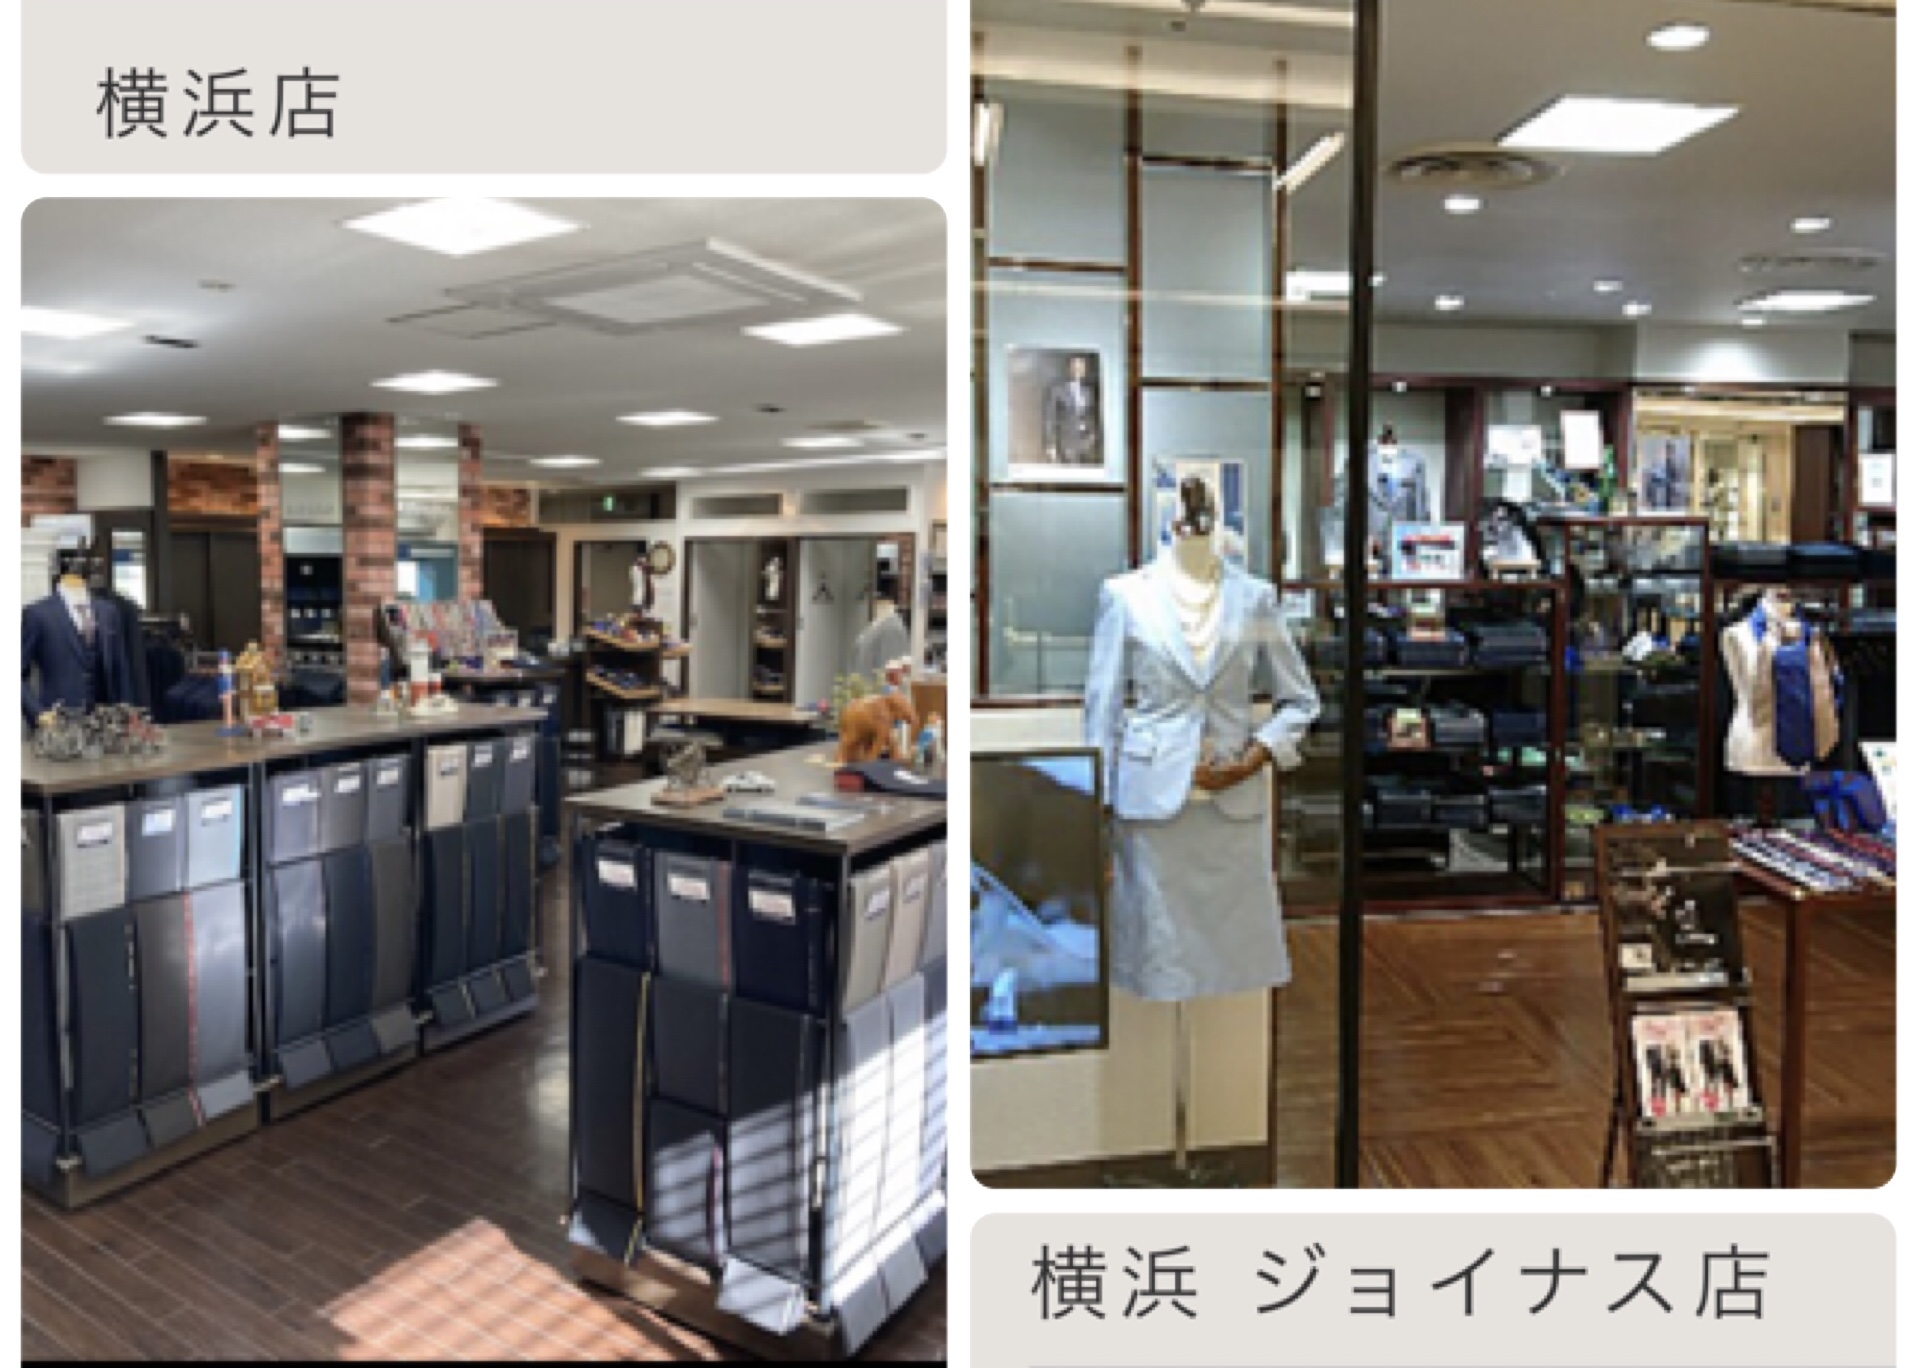 横浜エリアには2店舗あります